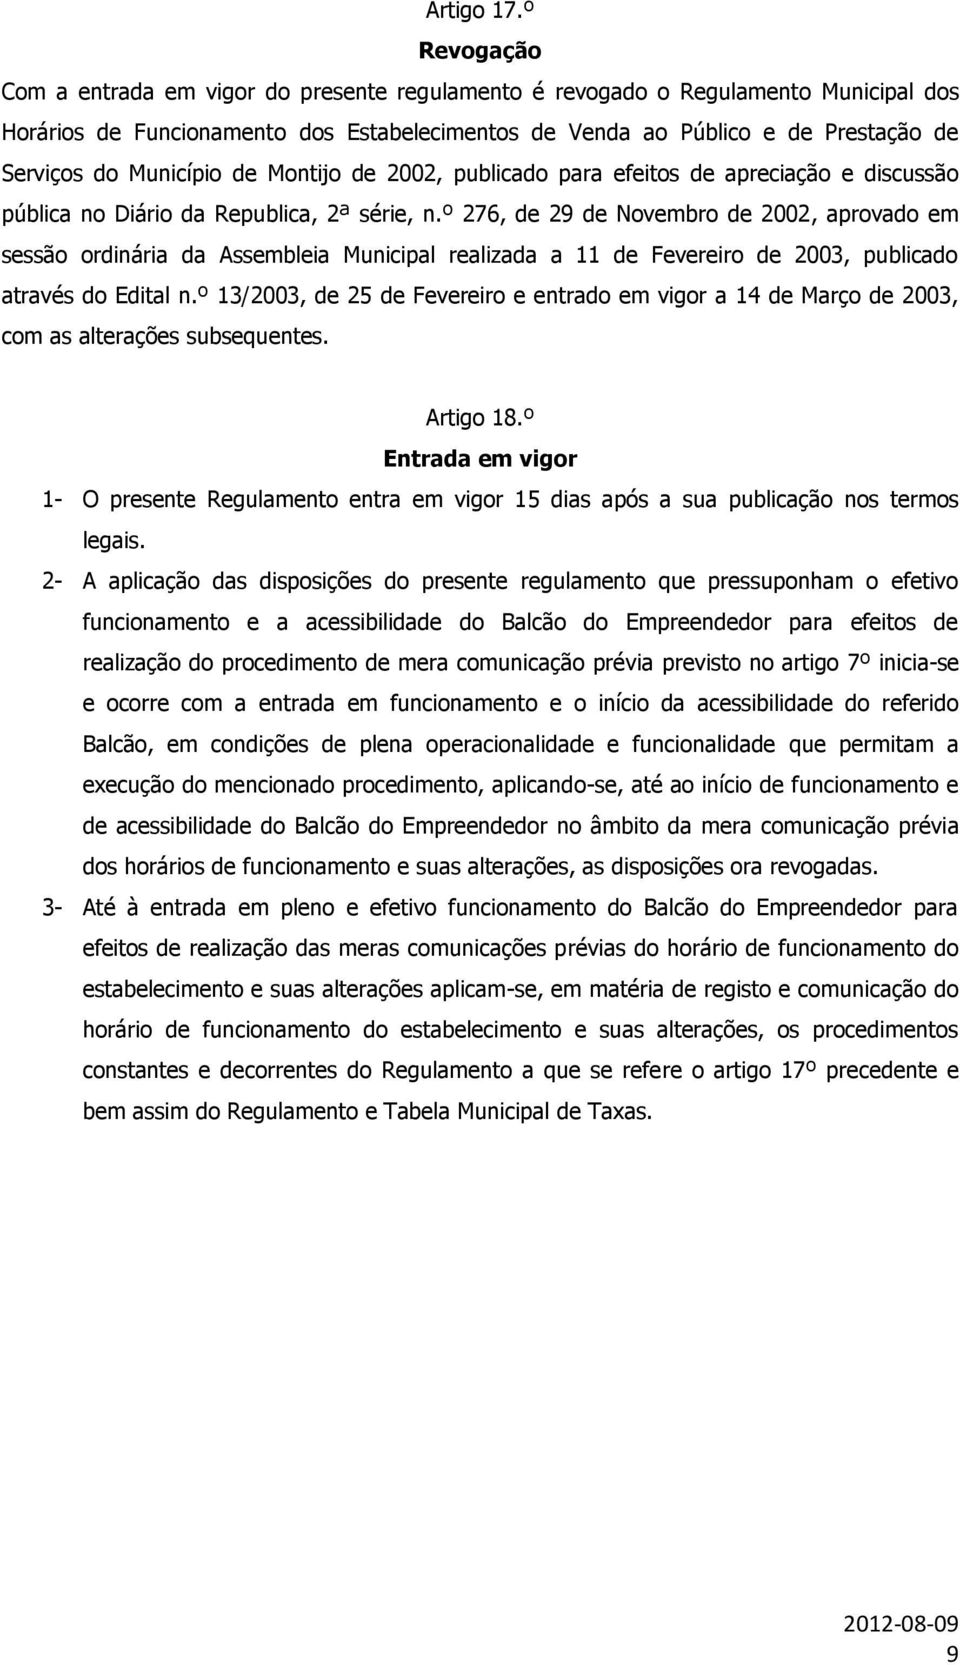 Município de Montijo de 2002, publicado para efeitos de apreciação e discussão pública no Diário da Republica, 2ª série, n.